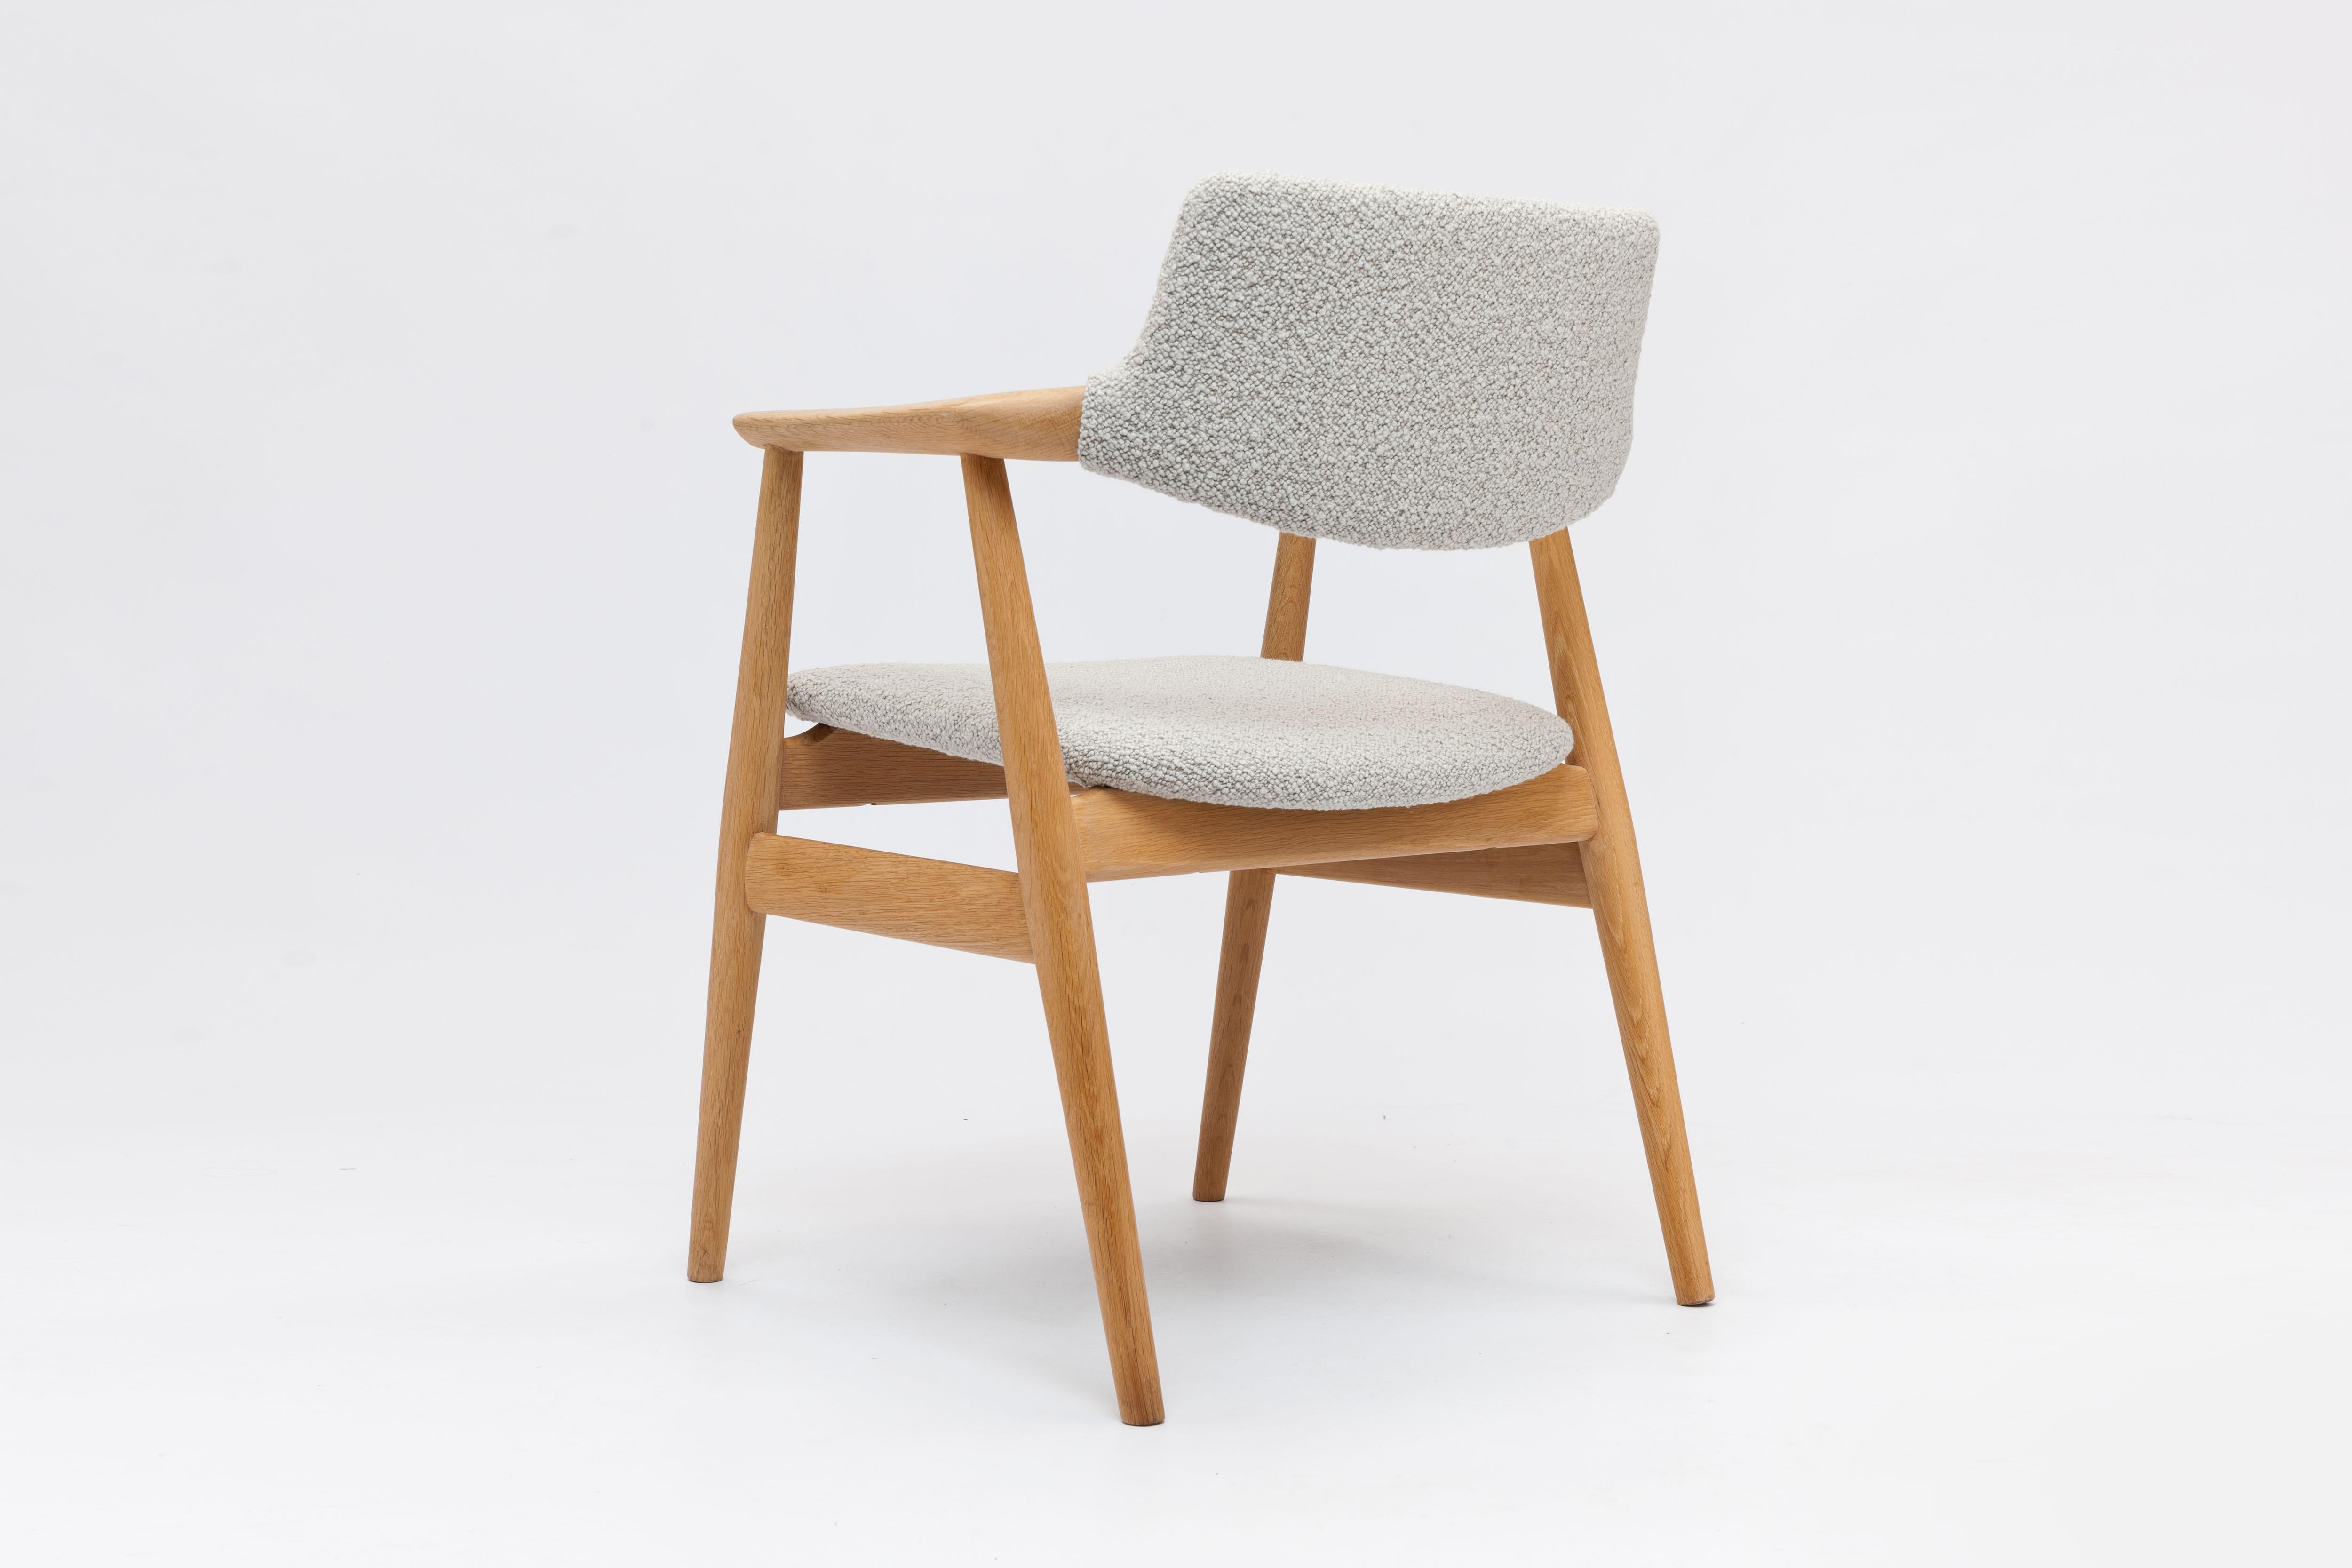 Ensemble de 4 fauteuils en chêne massif du designer danois Svend Åge Eriksen conçu en 1962 pour Glostrup Møbelfabrik, Danemark.

Le dossier flottant de ce modèle est une caractéristique frappante et magnifique de ce design intemporel exécuté en bois